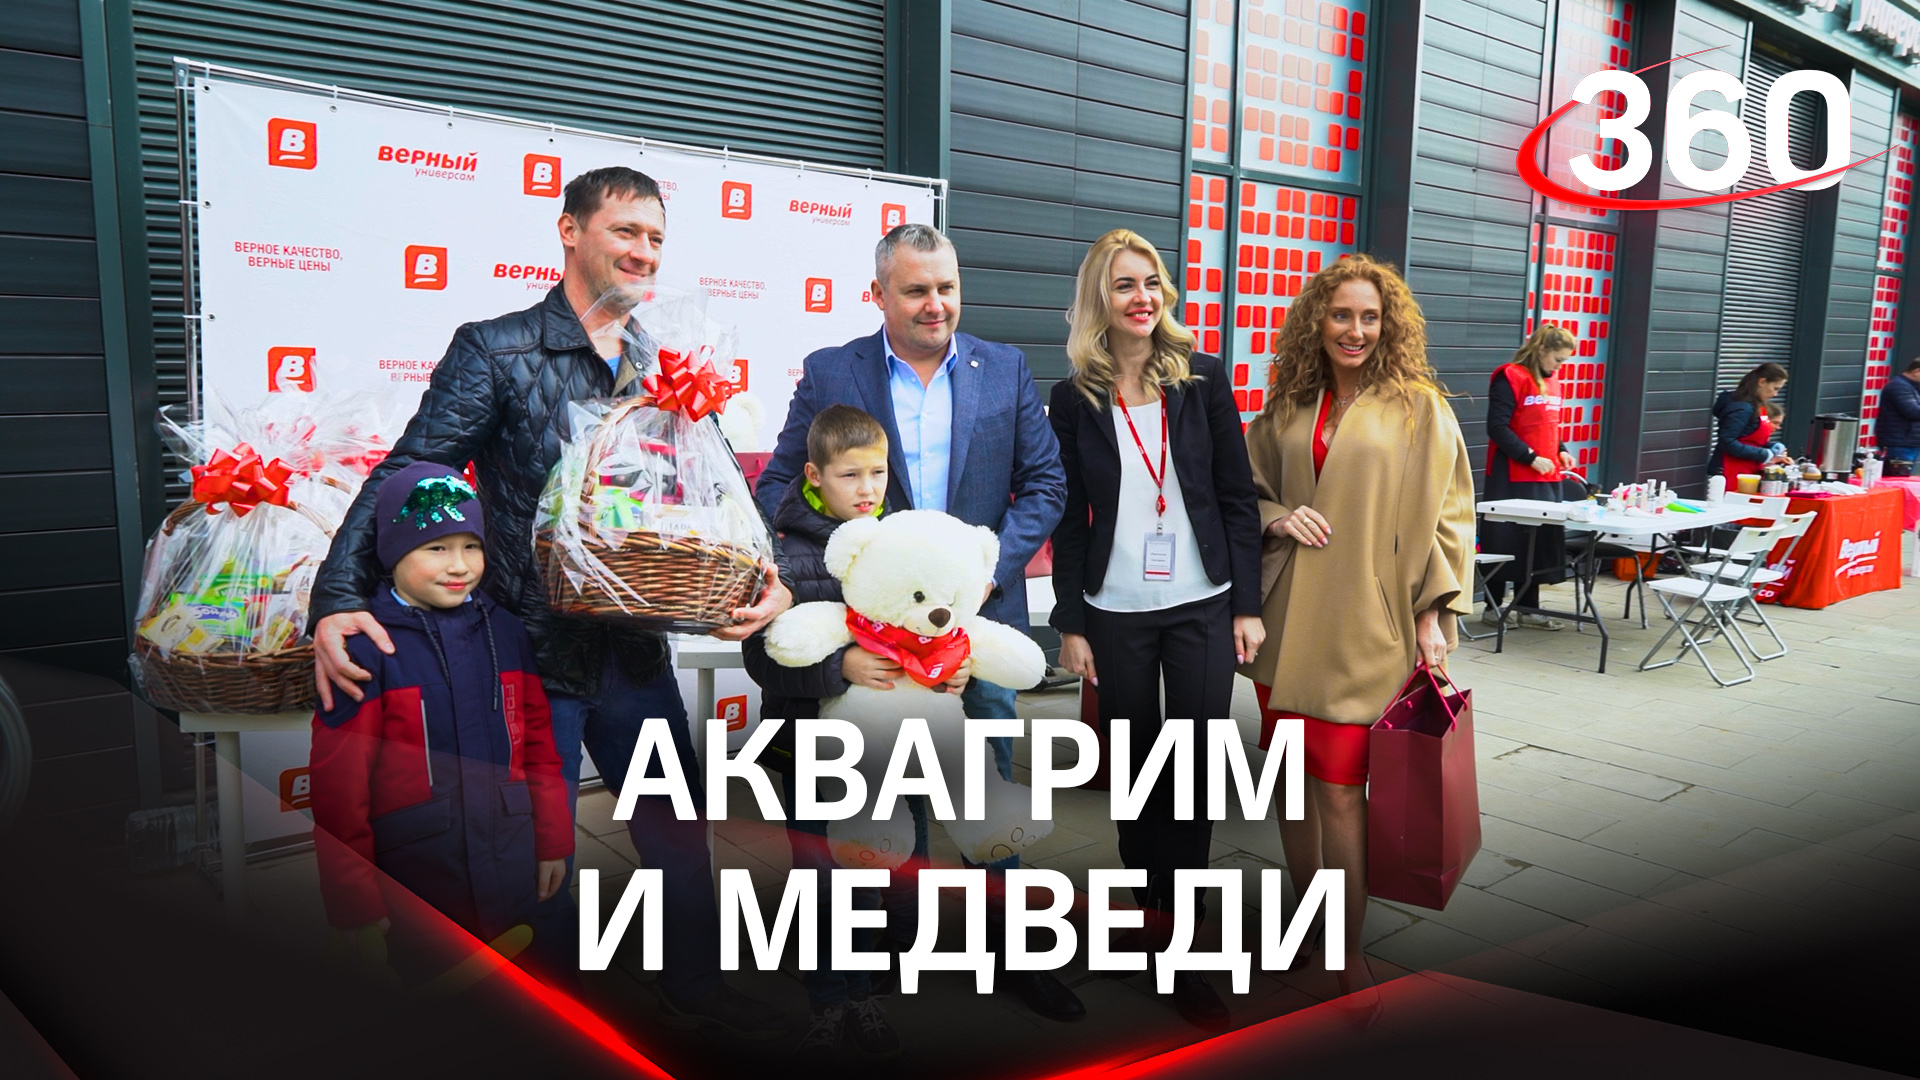 Новый магазин сети «Верный» открылся в Москве. Кадры с открытия